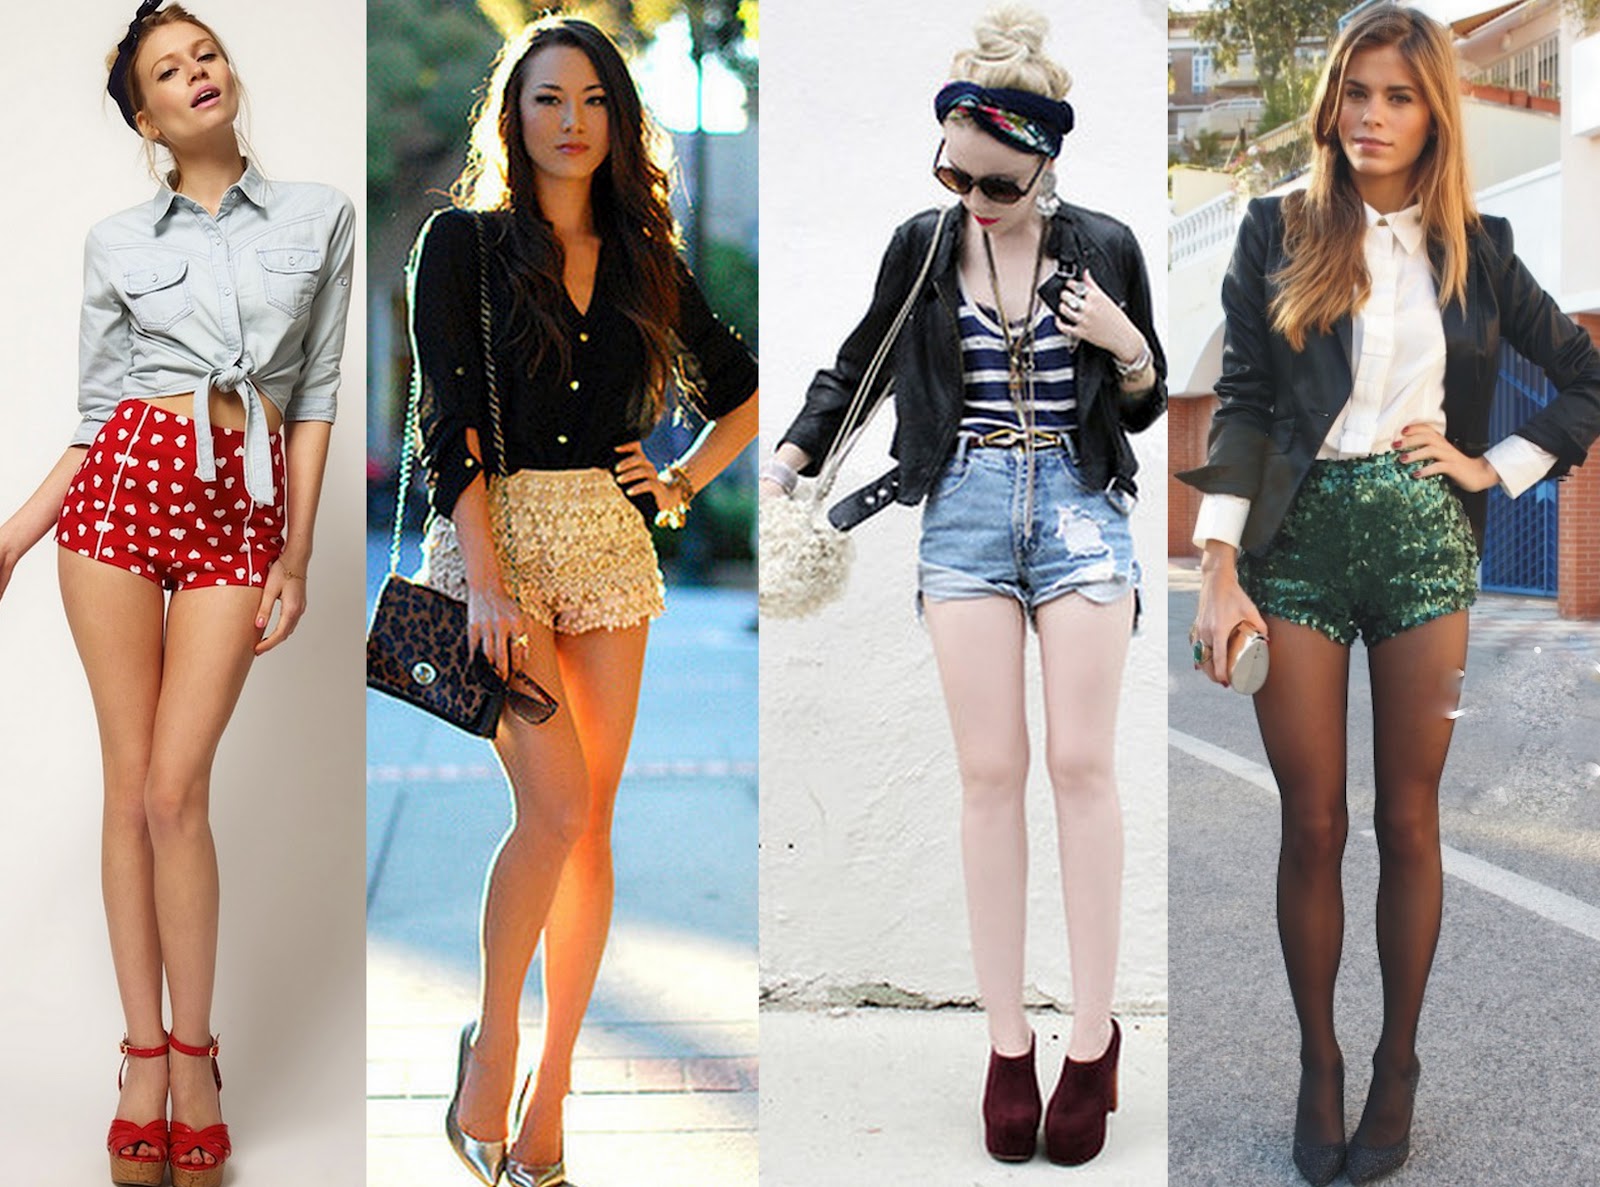 blog de moda | moda | sobre moda | verão 2014 | moda 2014 | moda 2013 | hot pant | hot pants verão 2014 | look de praia | look para o calor | look para um dia de calor